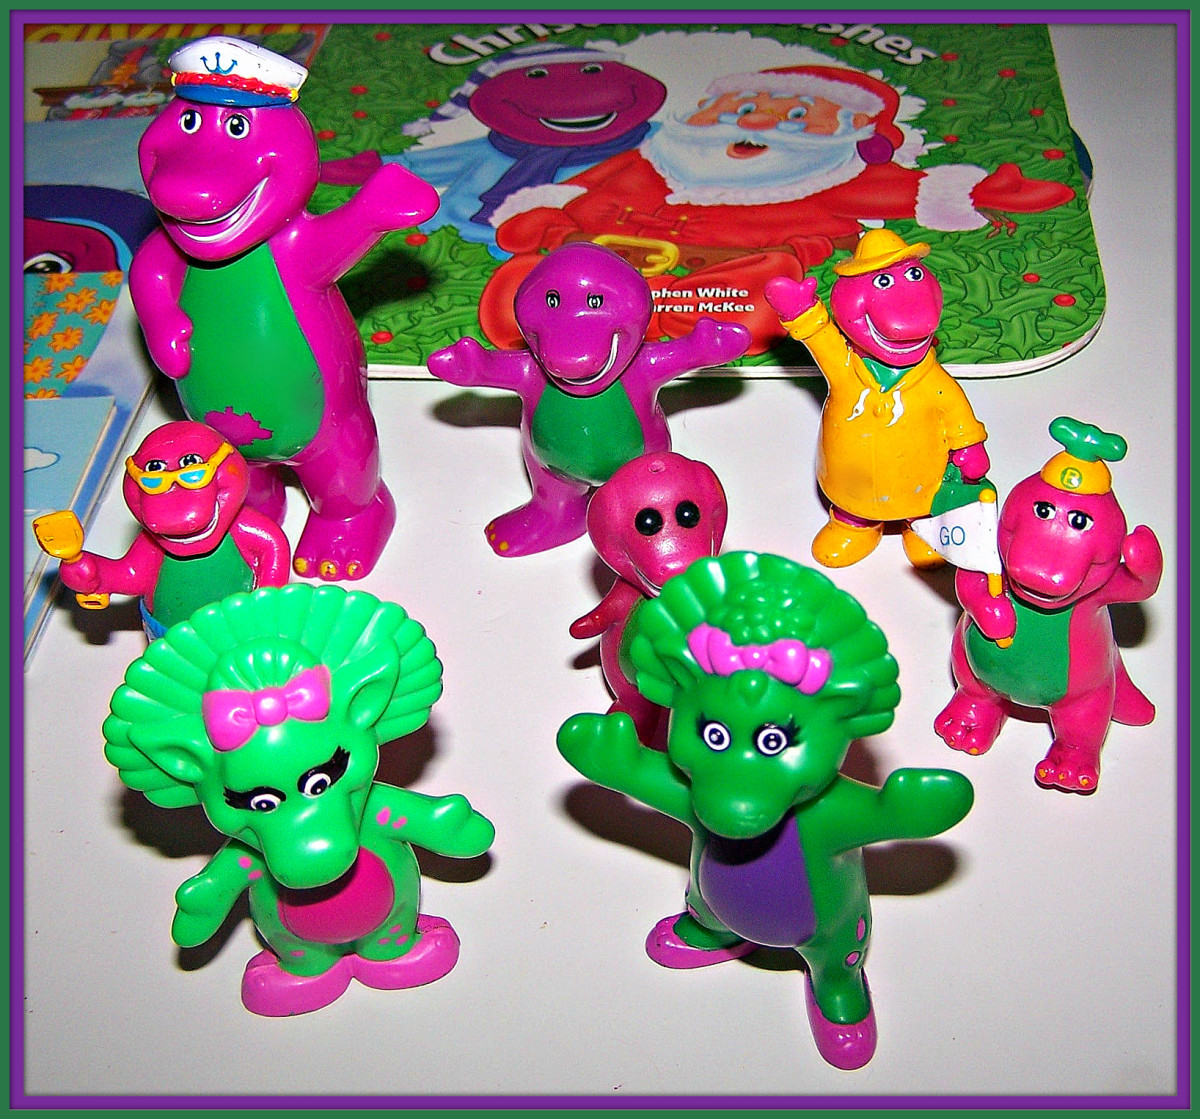 barney toys 2007